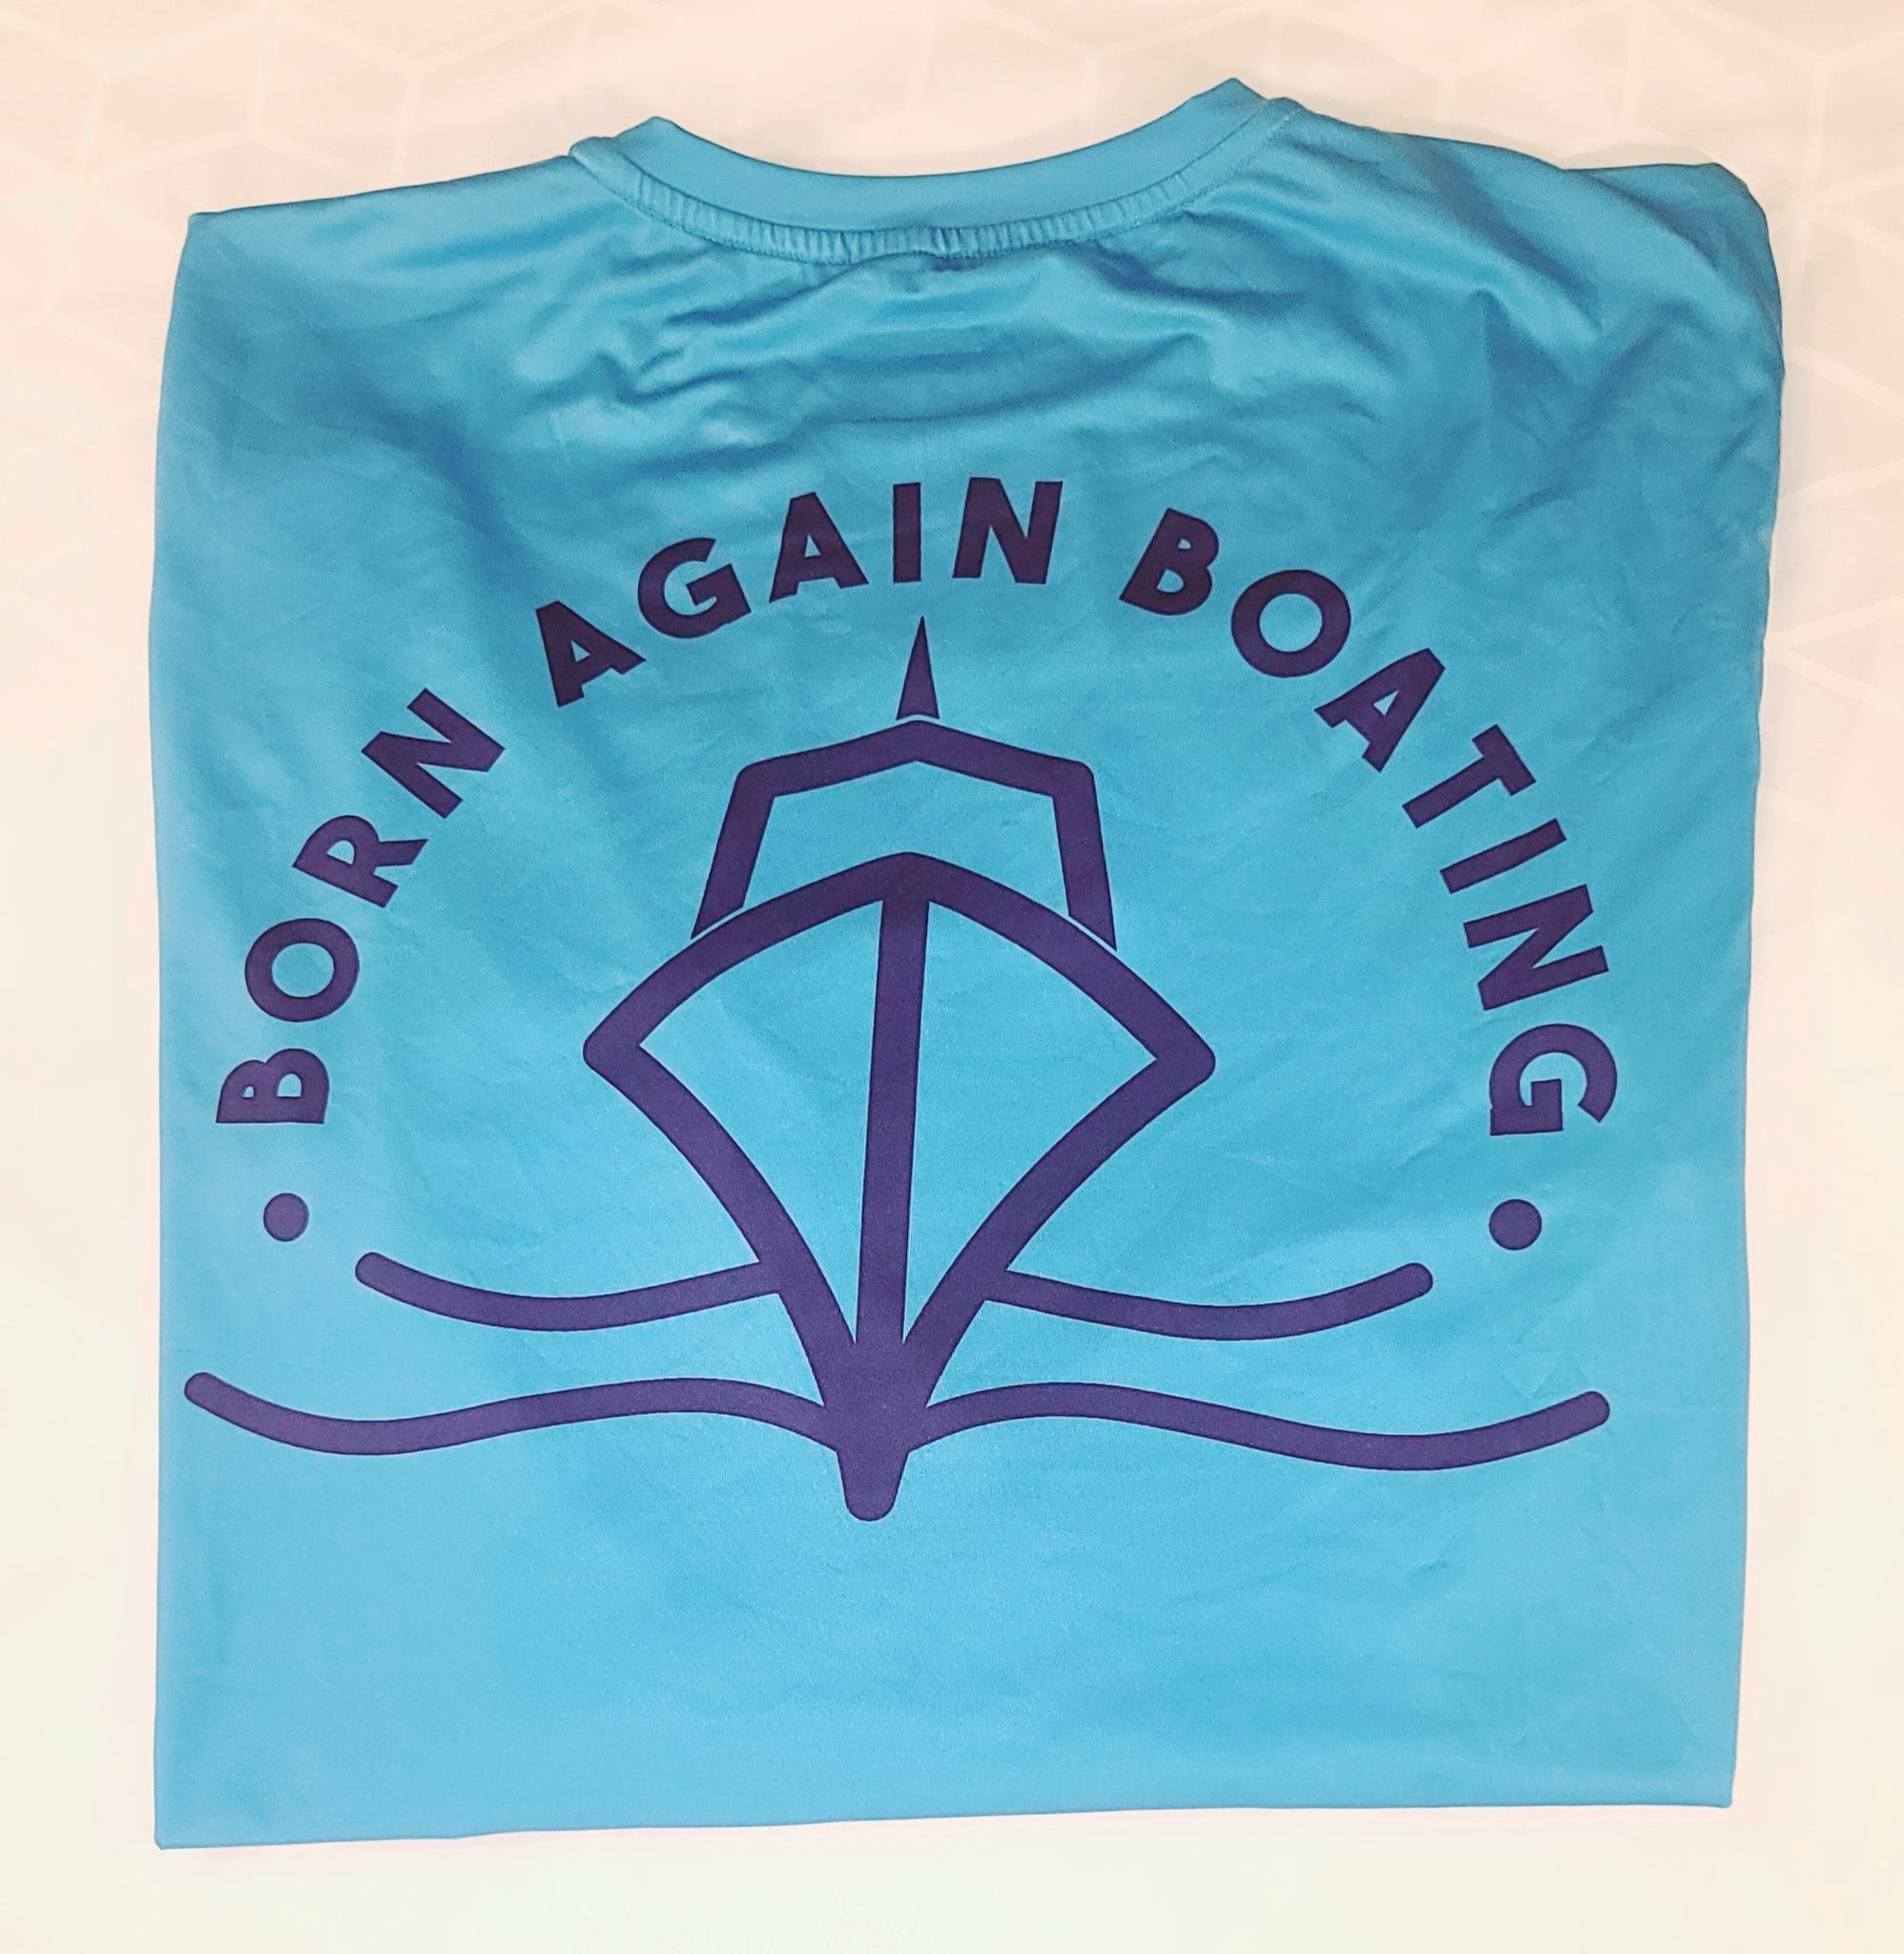 B.A.B Blue Long Sleeve Fishing Shirt XL